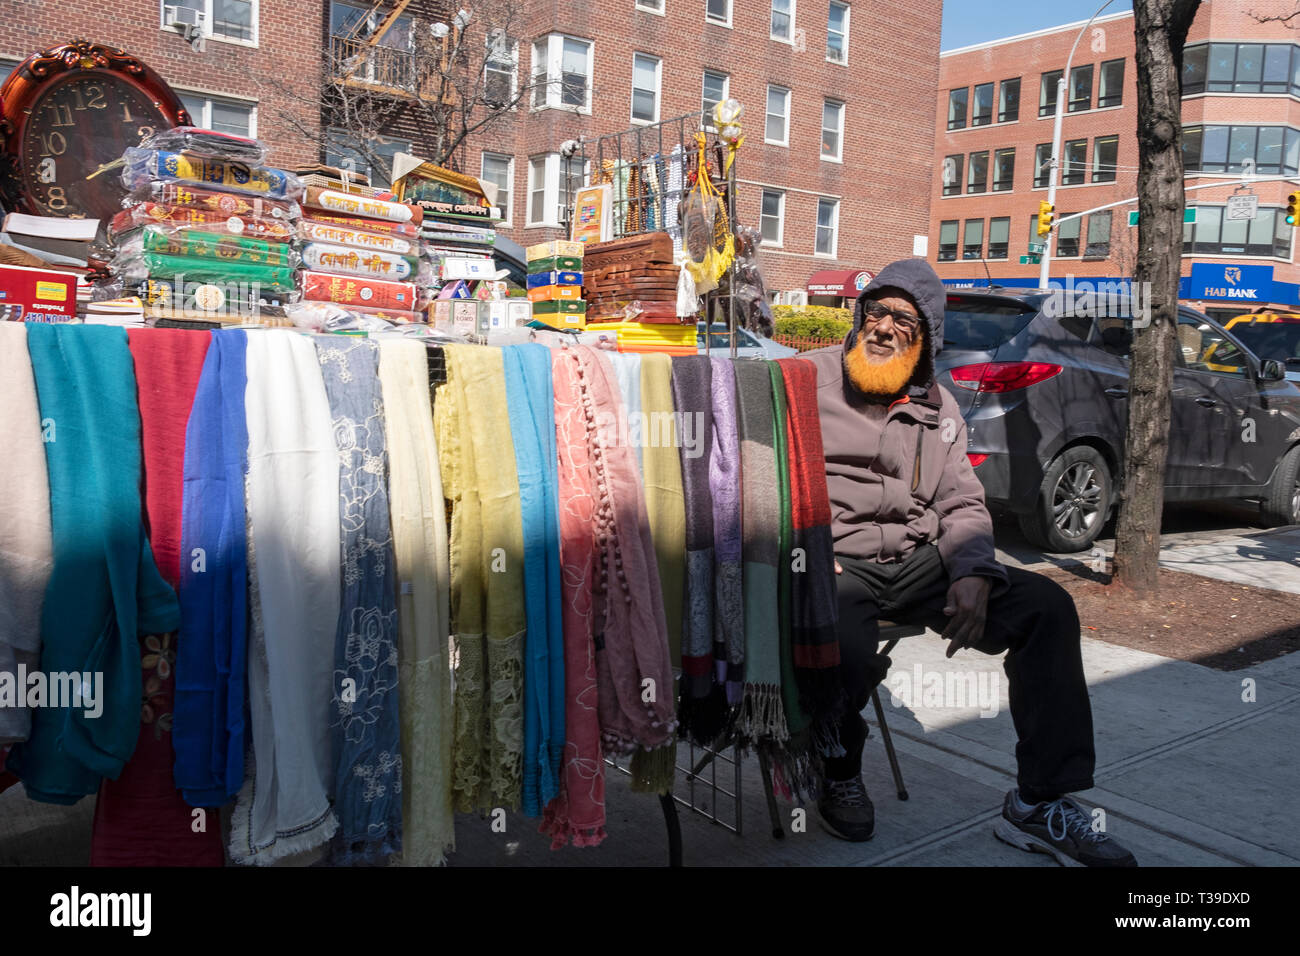 Un uomo musulmano con la sua barba tinto arancio, vendita di tessuti, Libri & articoli religiosi sulla 37th Avenue a Jackson Heights, Queens, a New York City. Foto Stock